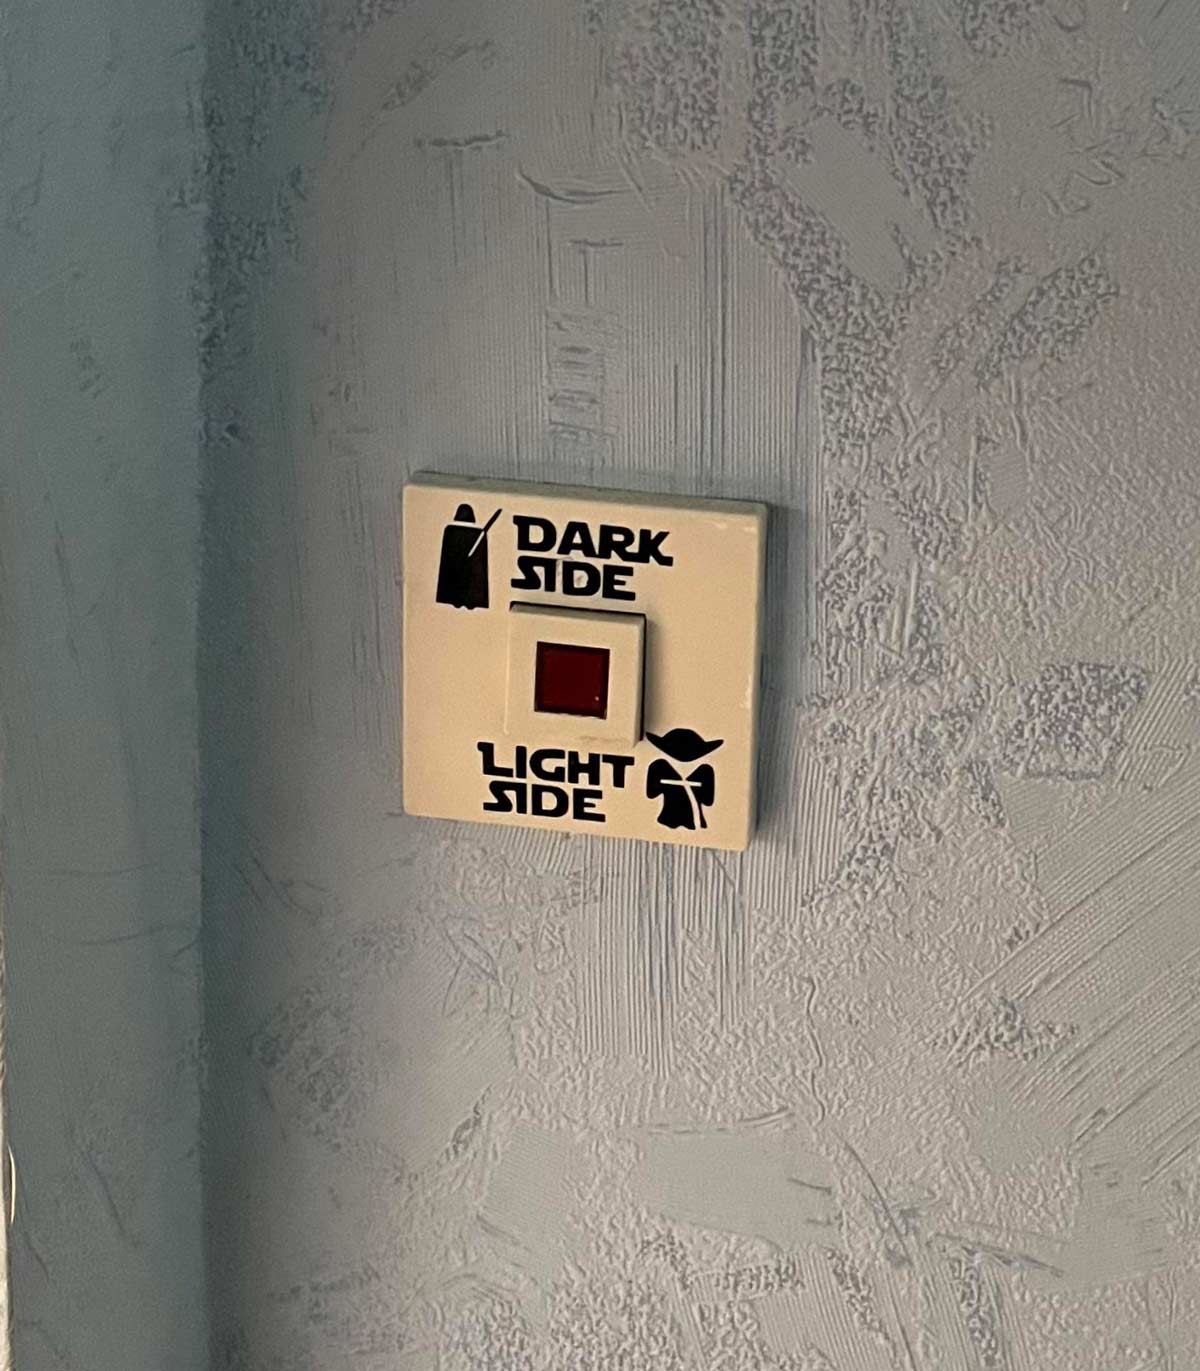 A light switch I saw today